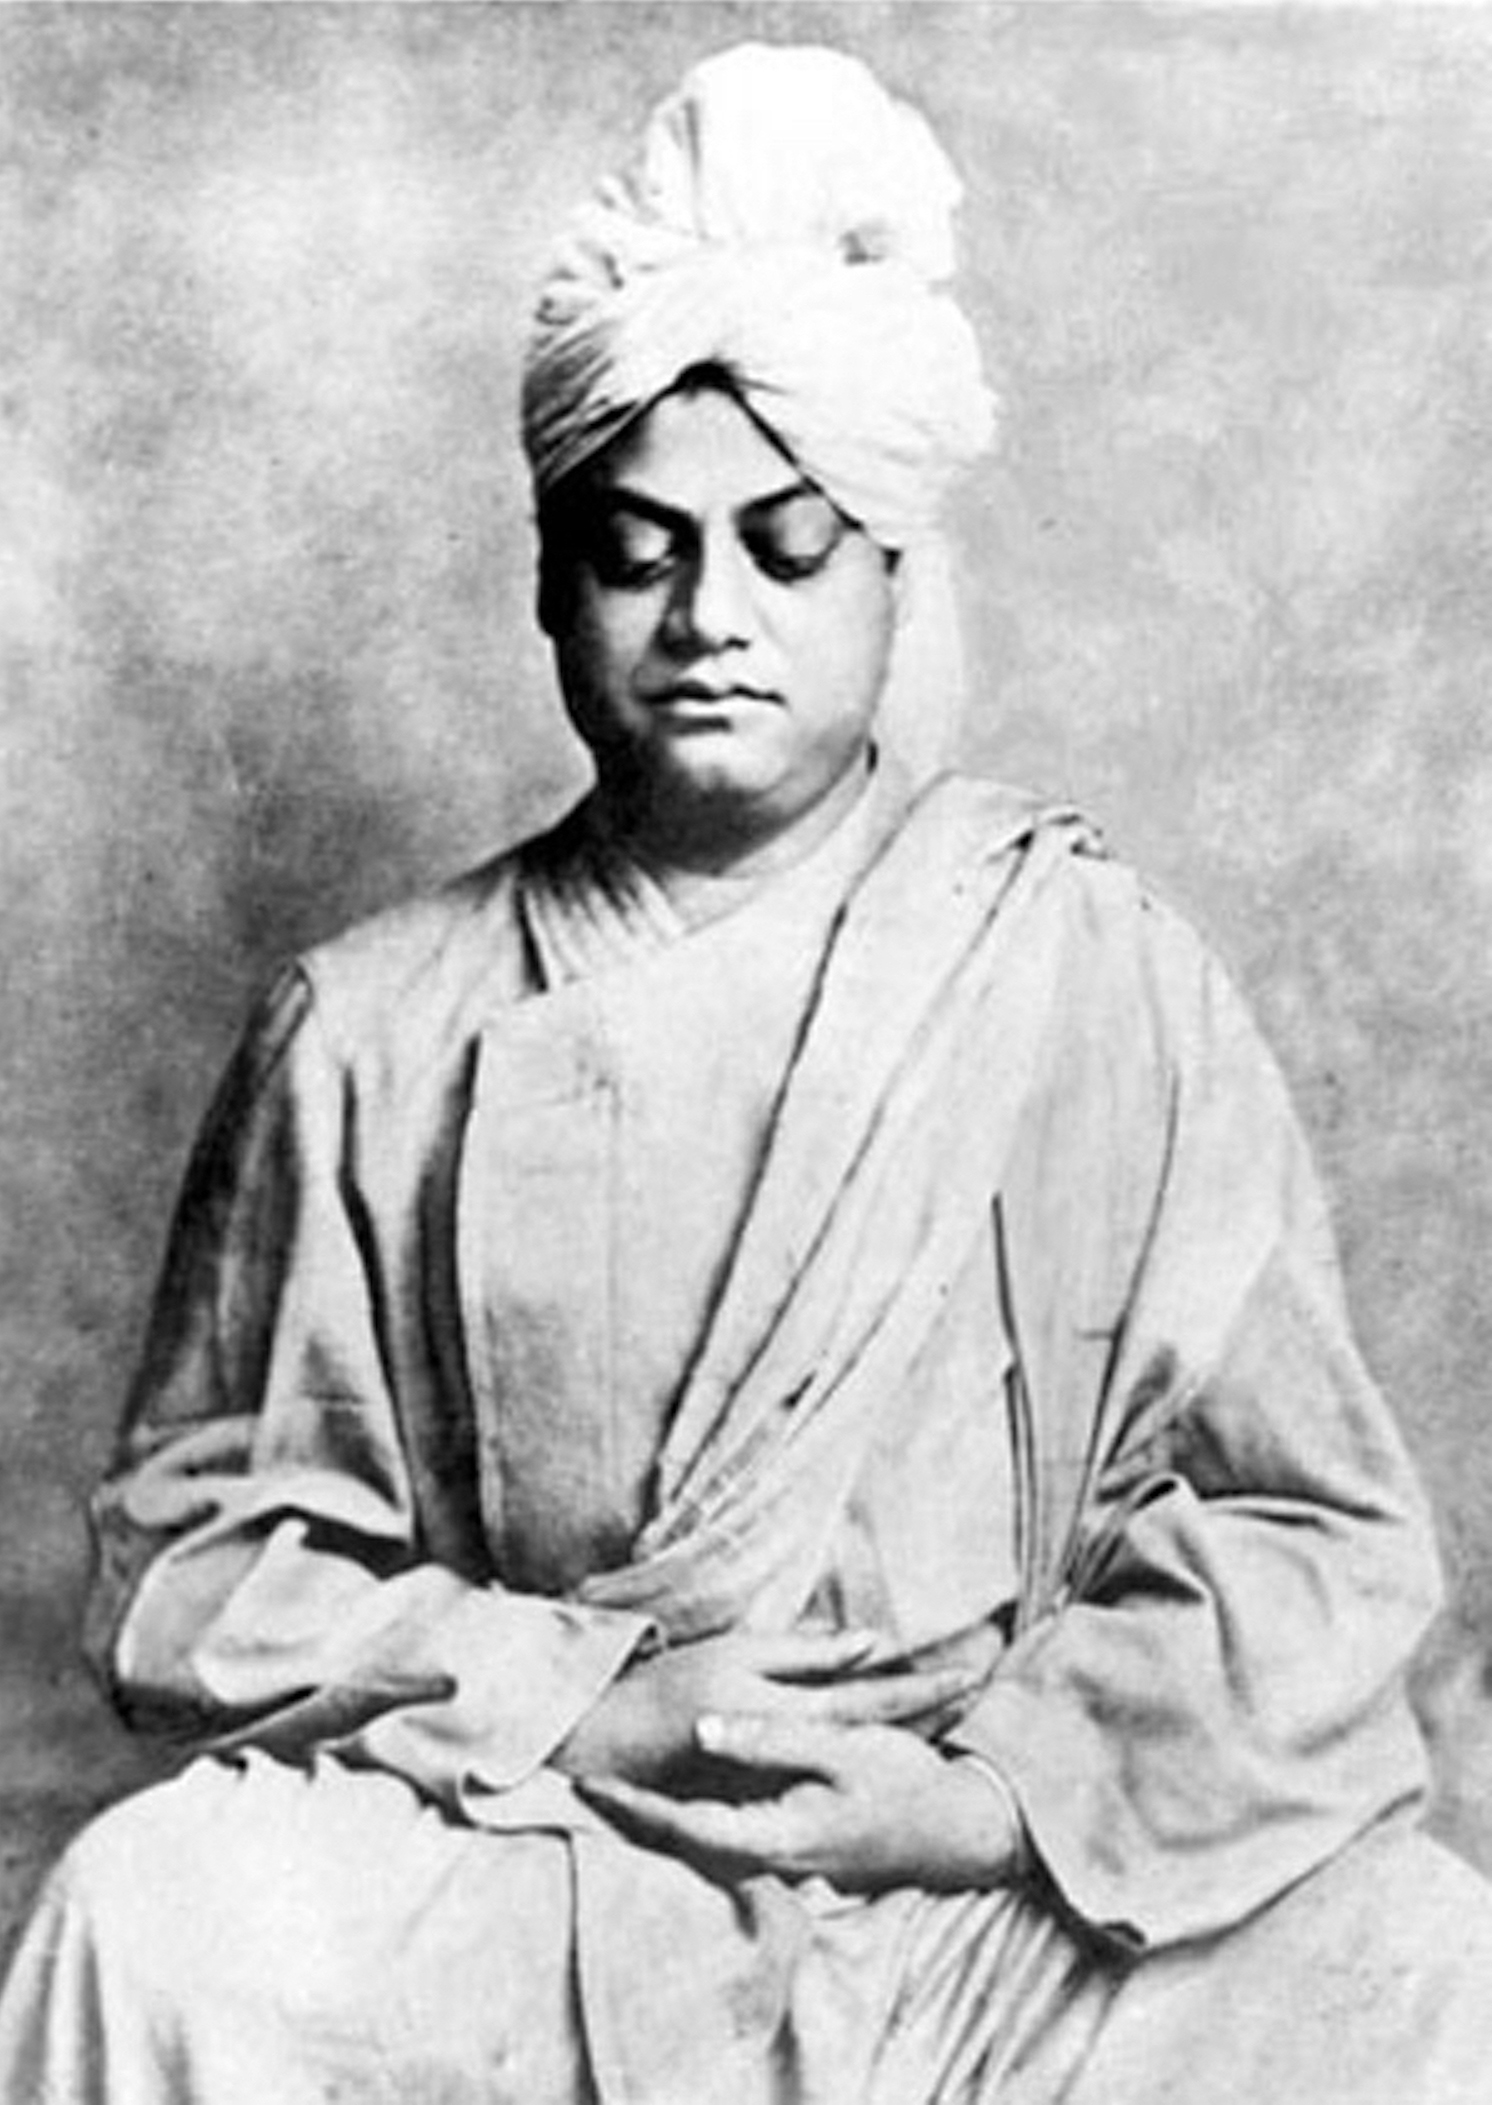 Black and white photo portrait of Swami Vivekananda.